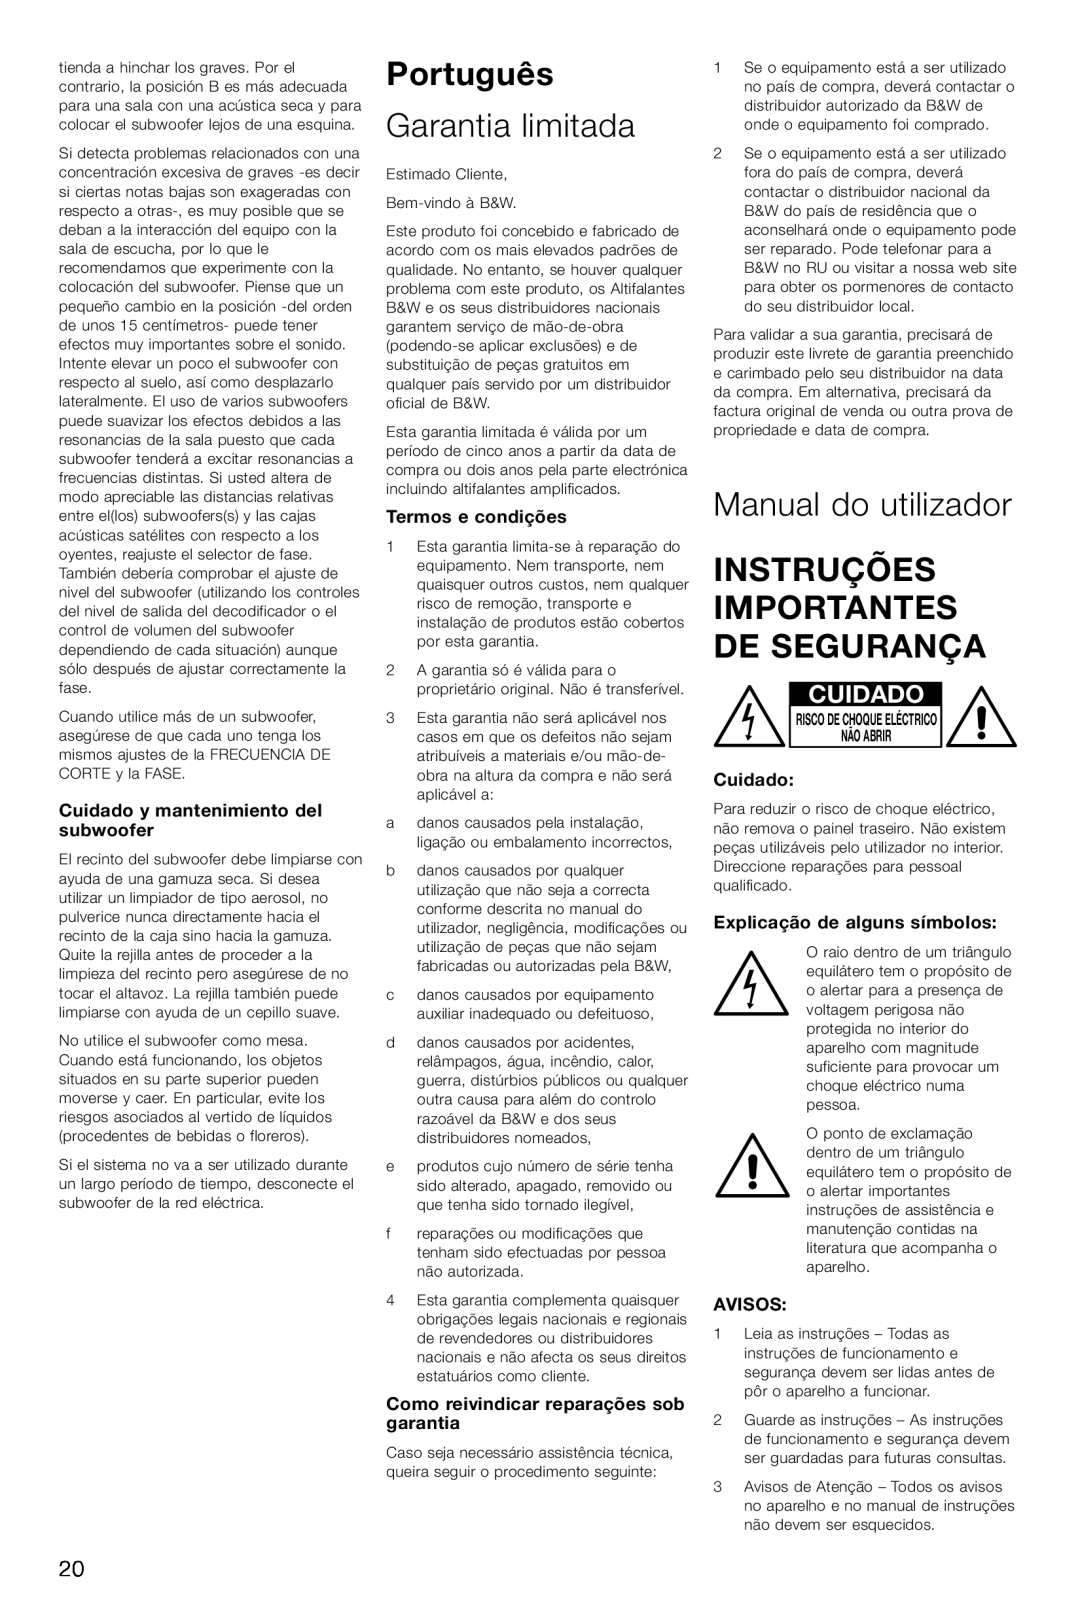 Bowers & Wilkins ASW600 Português, Garantia limitada, Manual do utilizador, Instruções Importantes De Segurança, Cuidado 